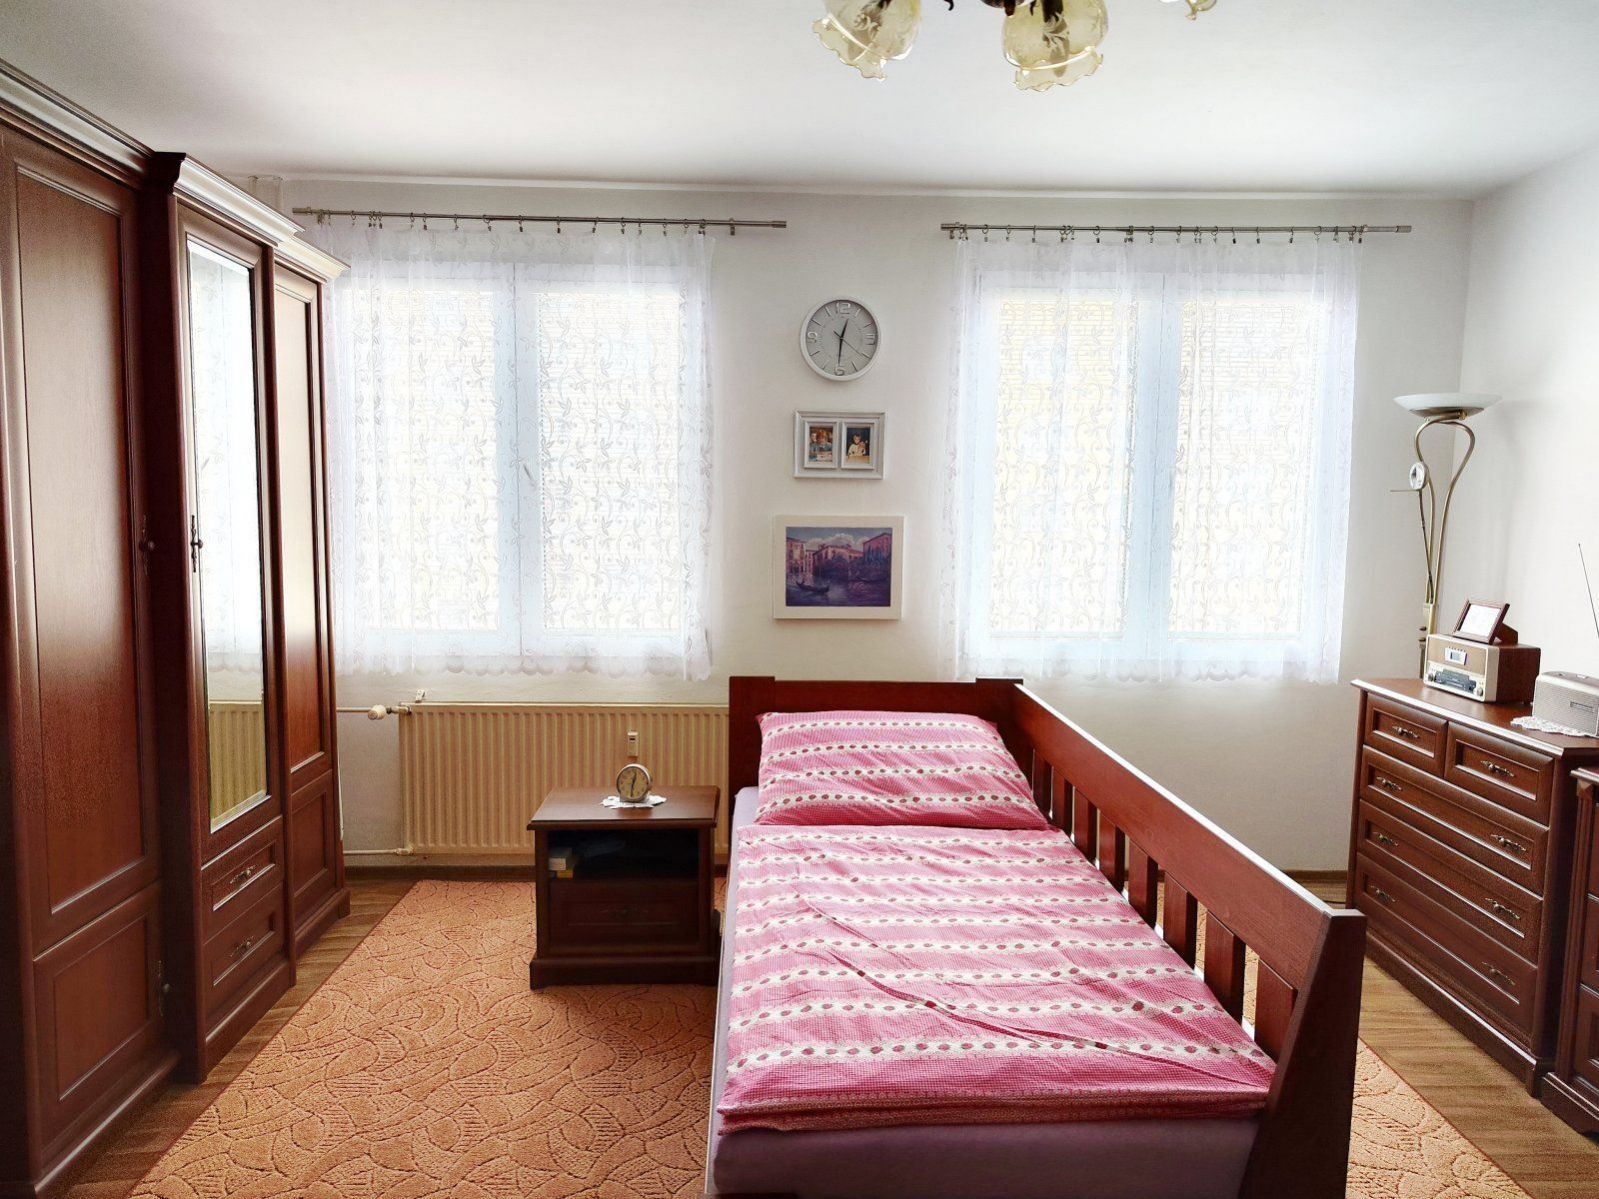 ZAJÍMAVÁ INVESTICE - Prodej slunného bytu 1+kk, 31 m2, OV, klidná část města Plzeň - Bolevec, obrázek č. 3